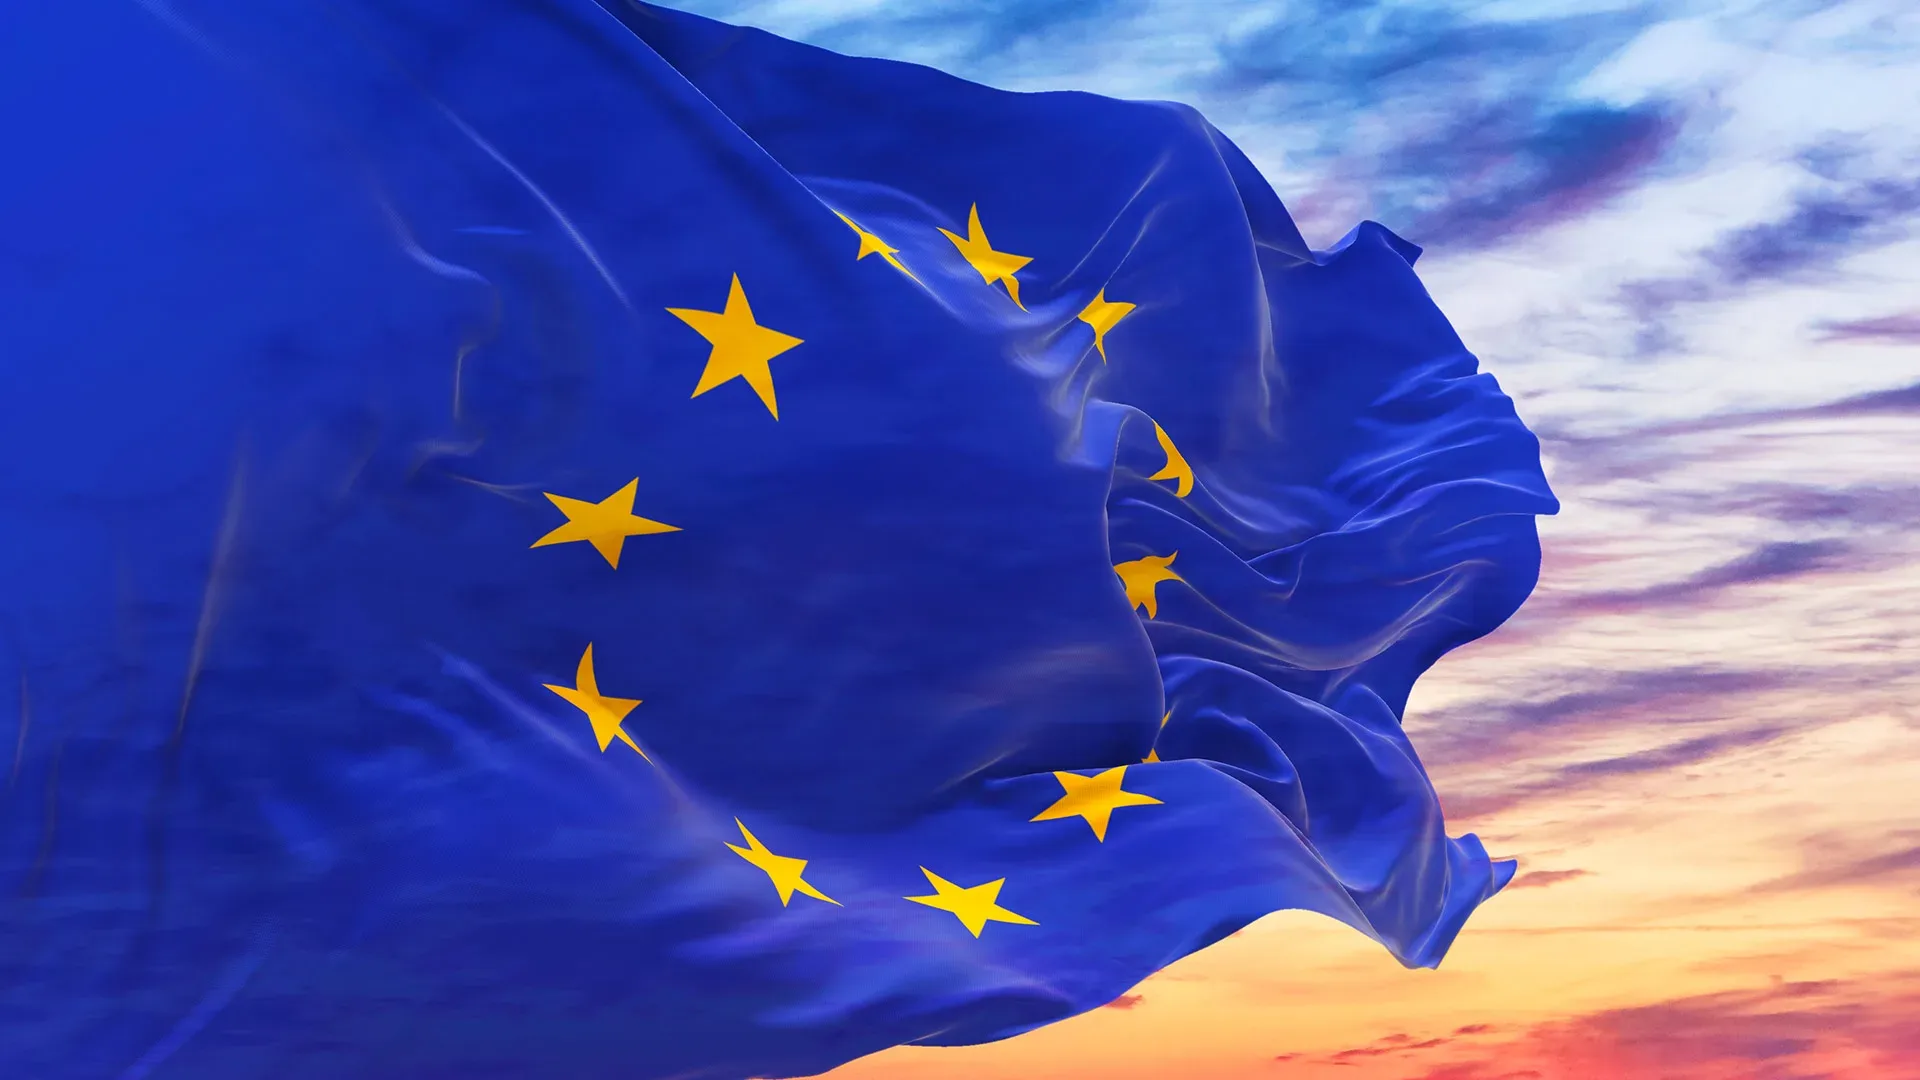 Die EU Flagge - alles zu Farben, Symbolen & Geschichte